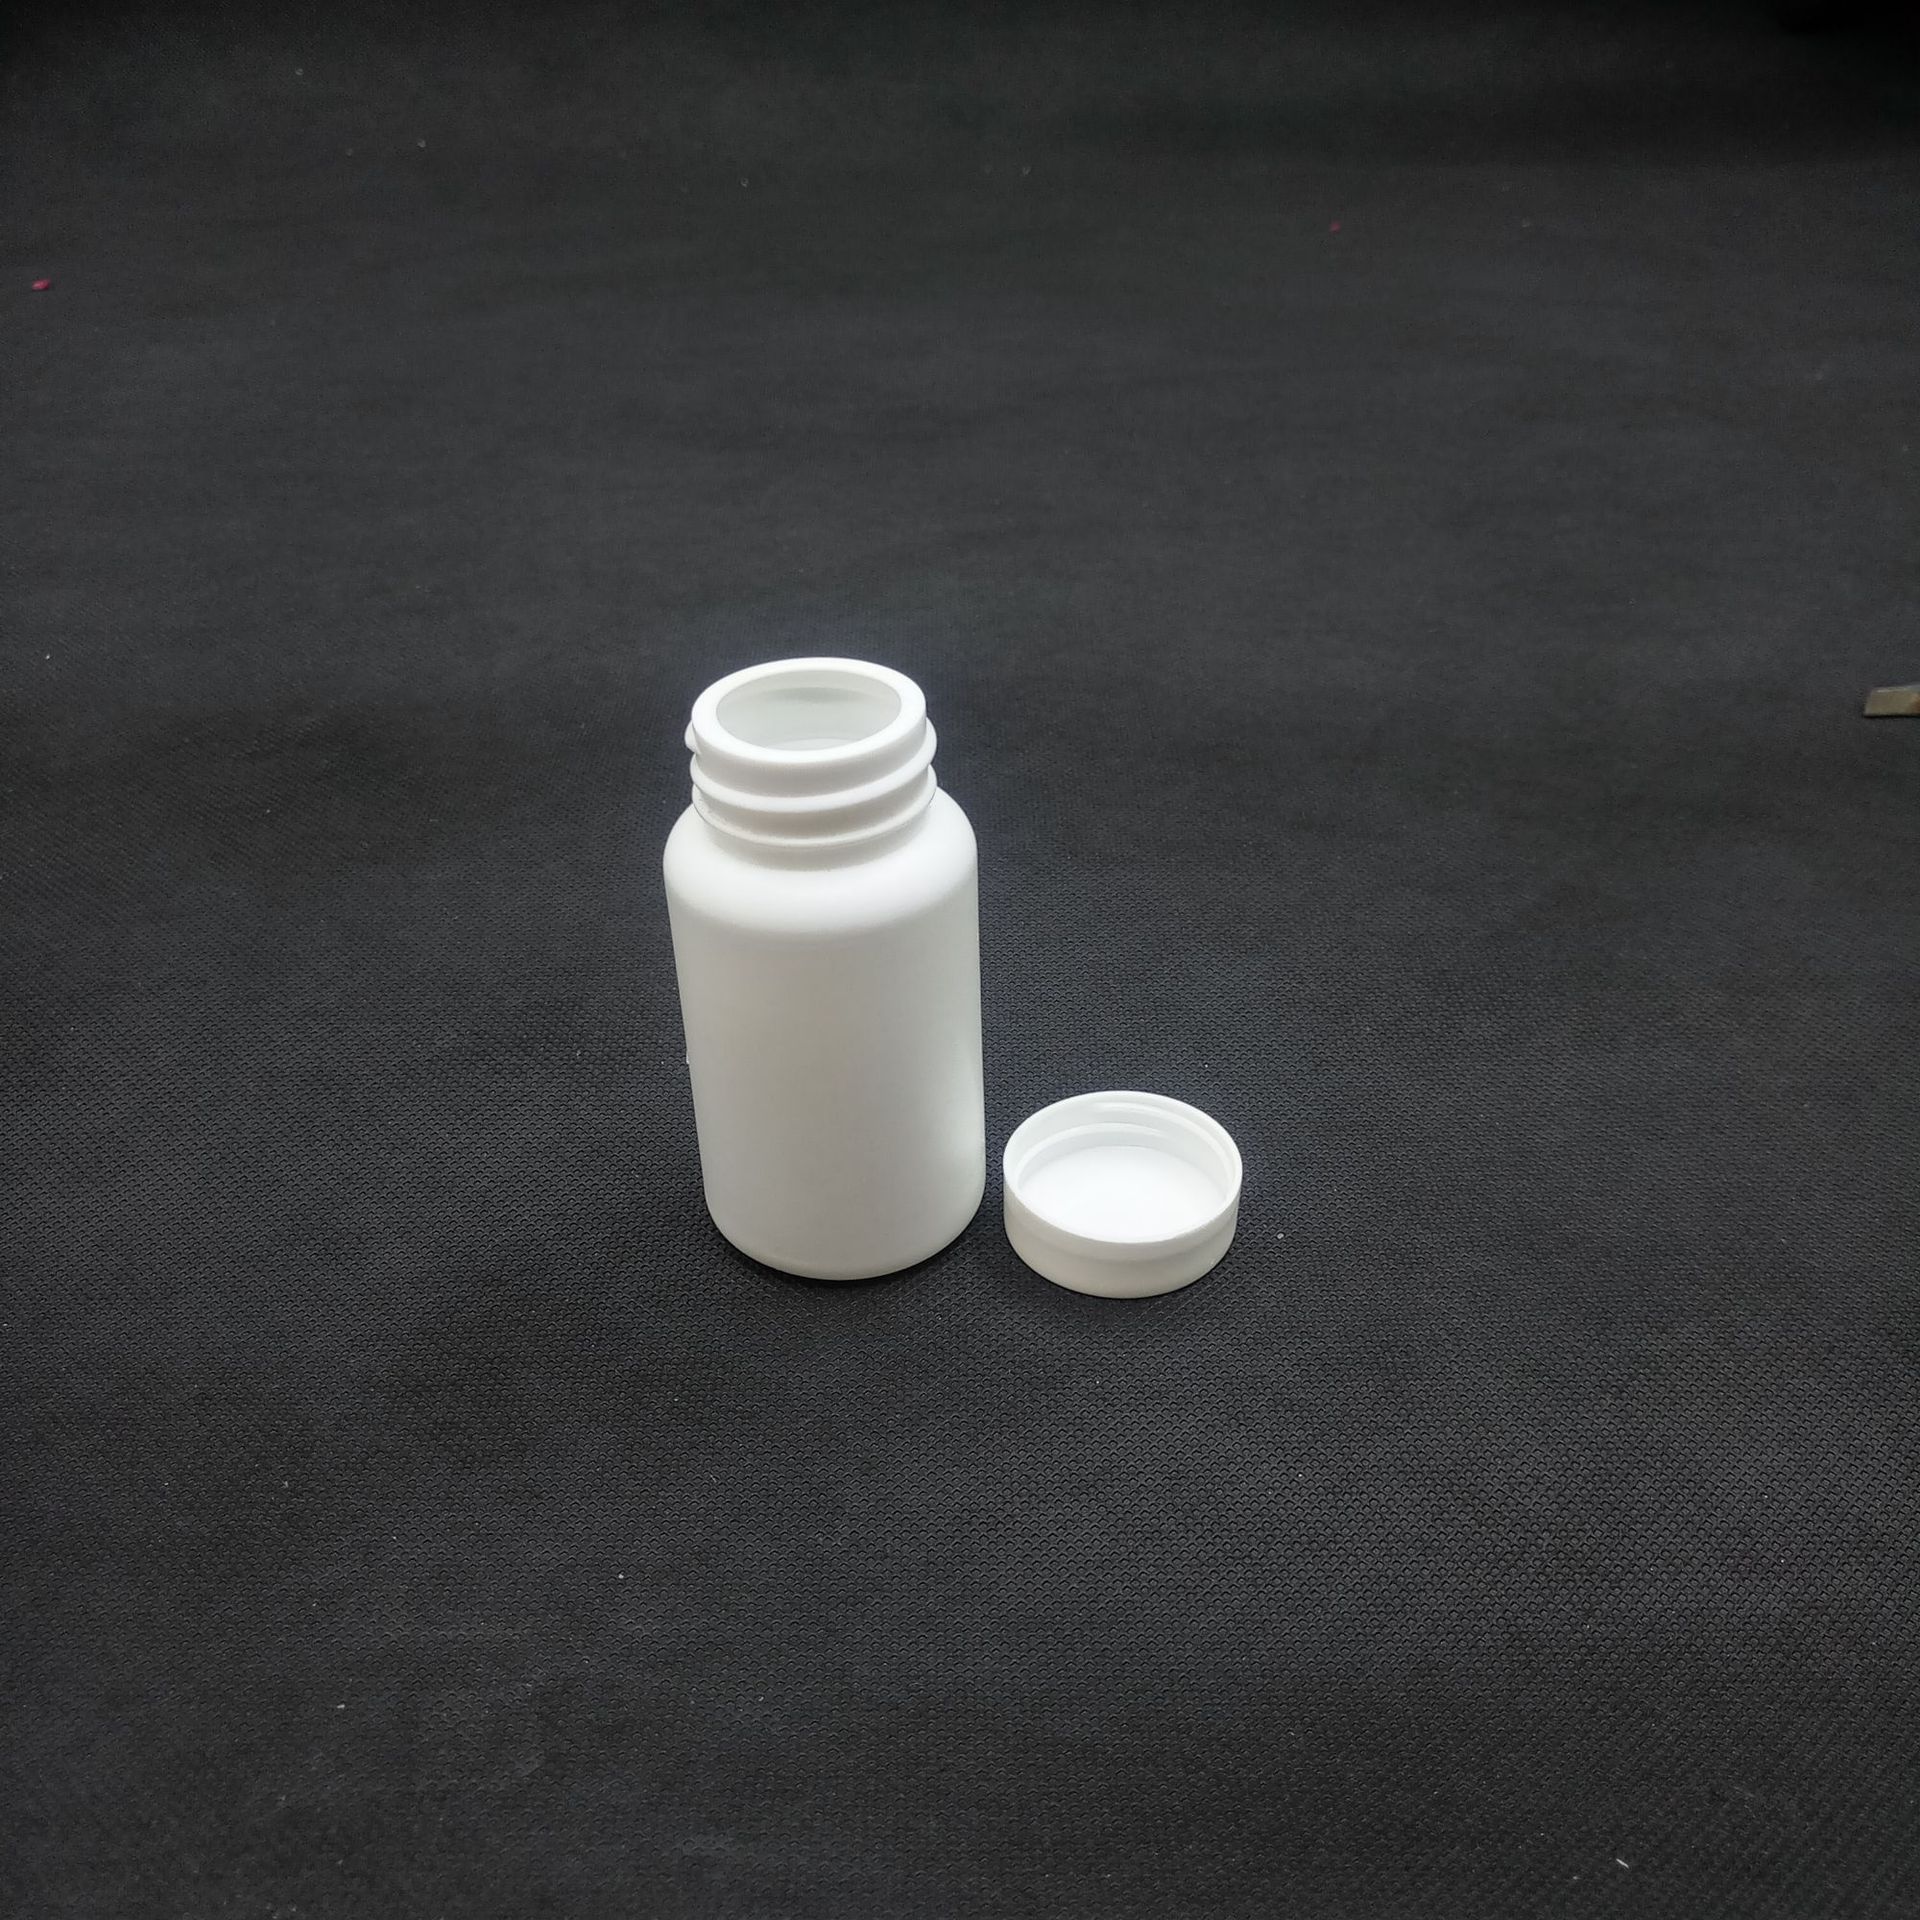 塑料瓶、壶 厂家批发50g高密度聚乙烯大口粉瓶兽药鱼药保健品瓶